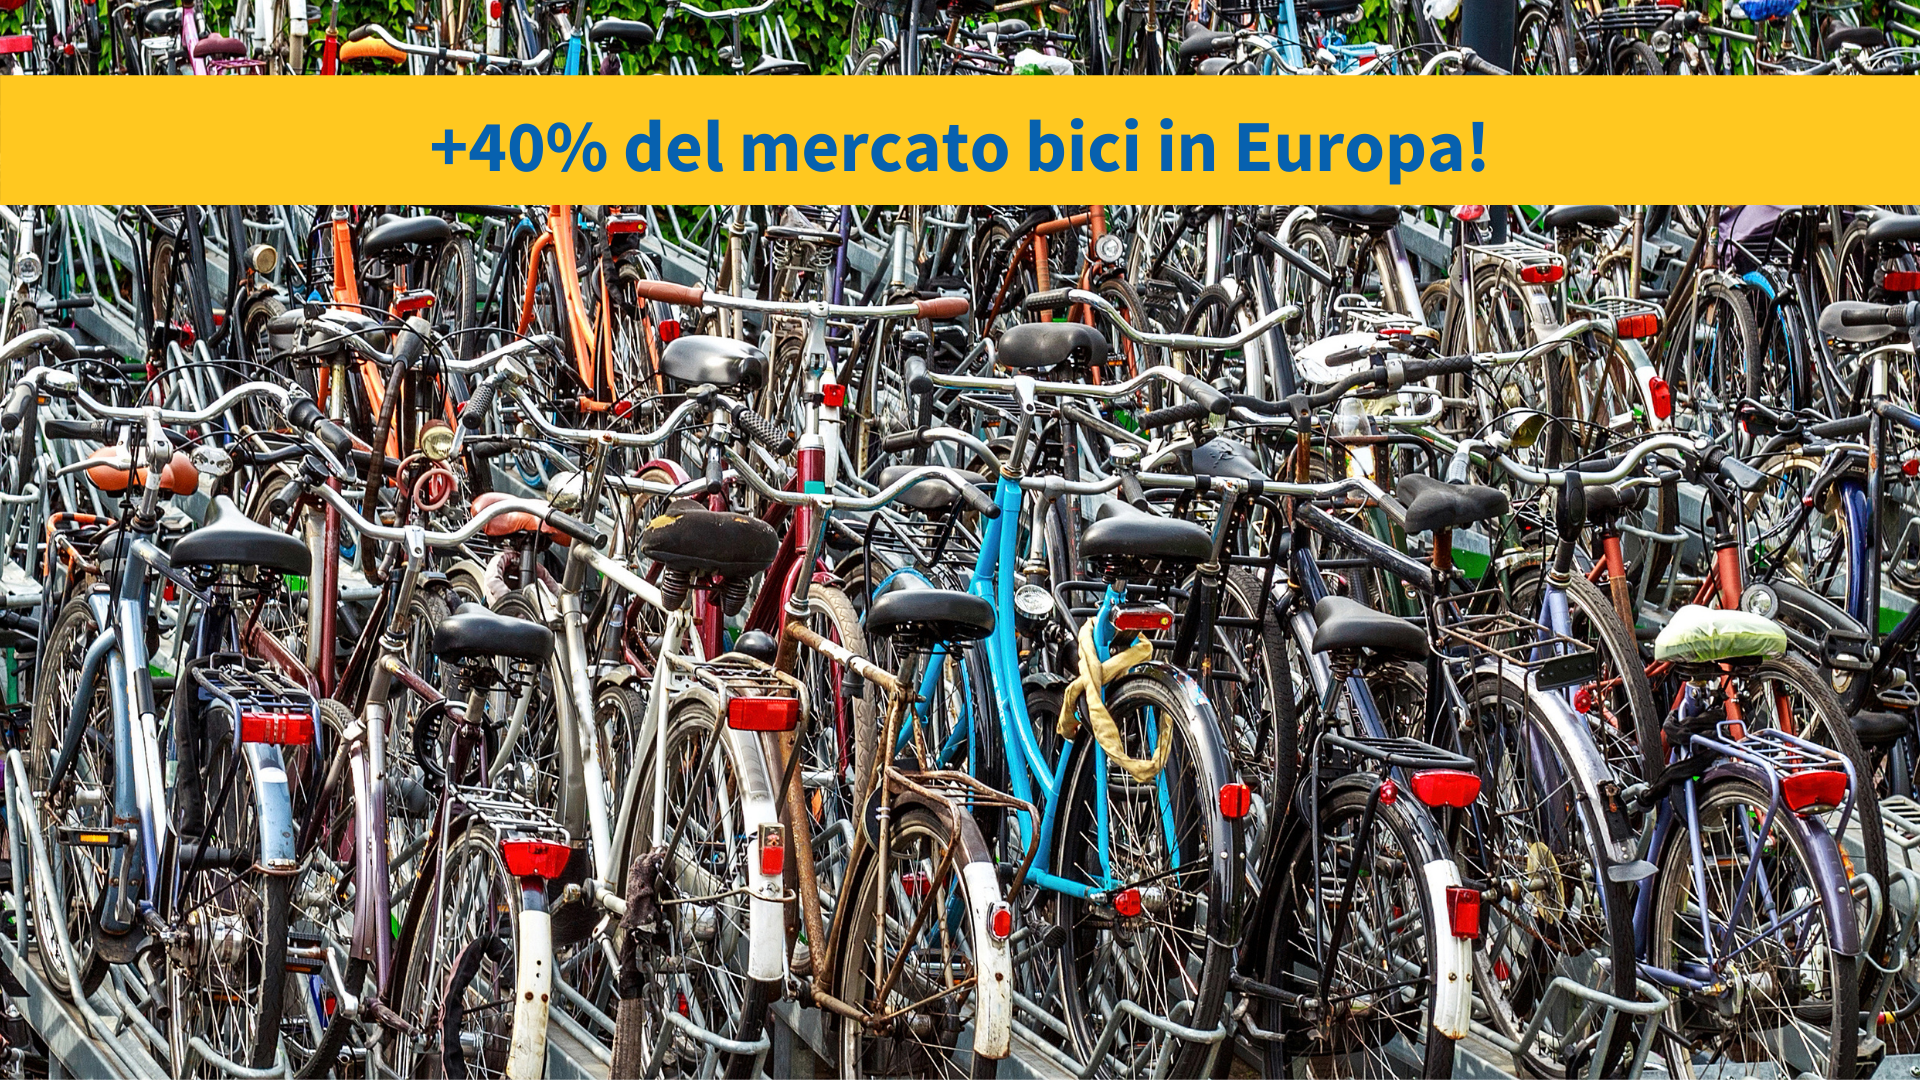 La grande crescita del mercato bici in Europa